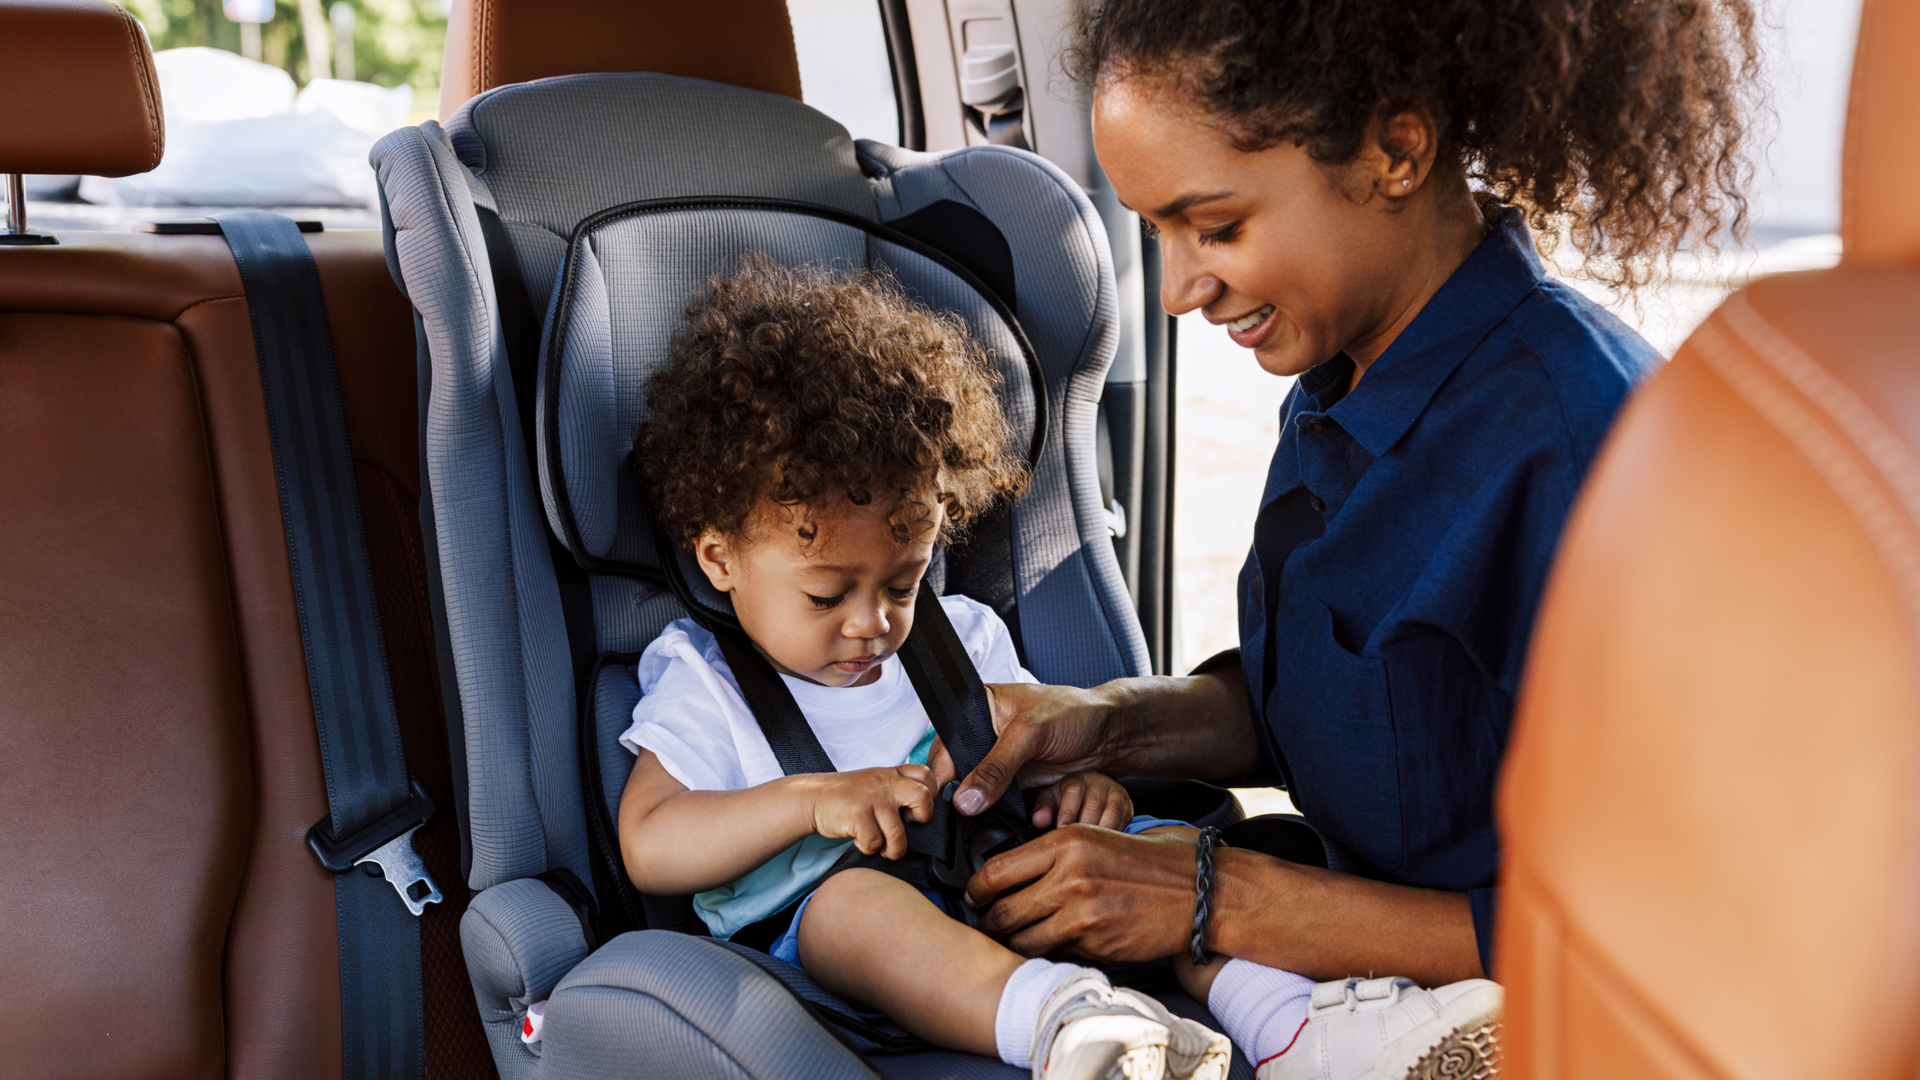 Viagem com crianças: dicas para viajar de forma segura